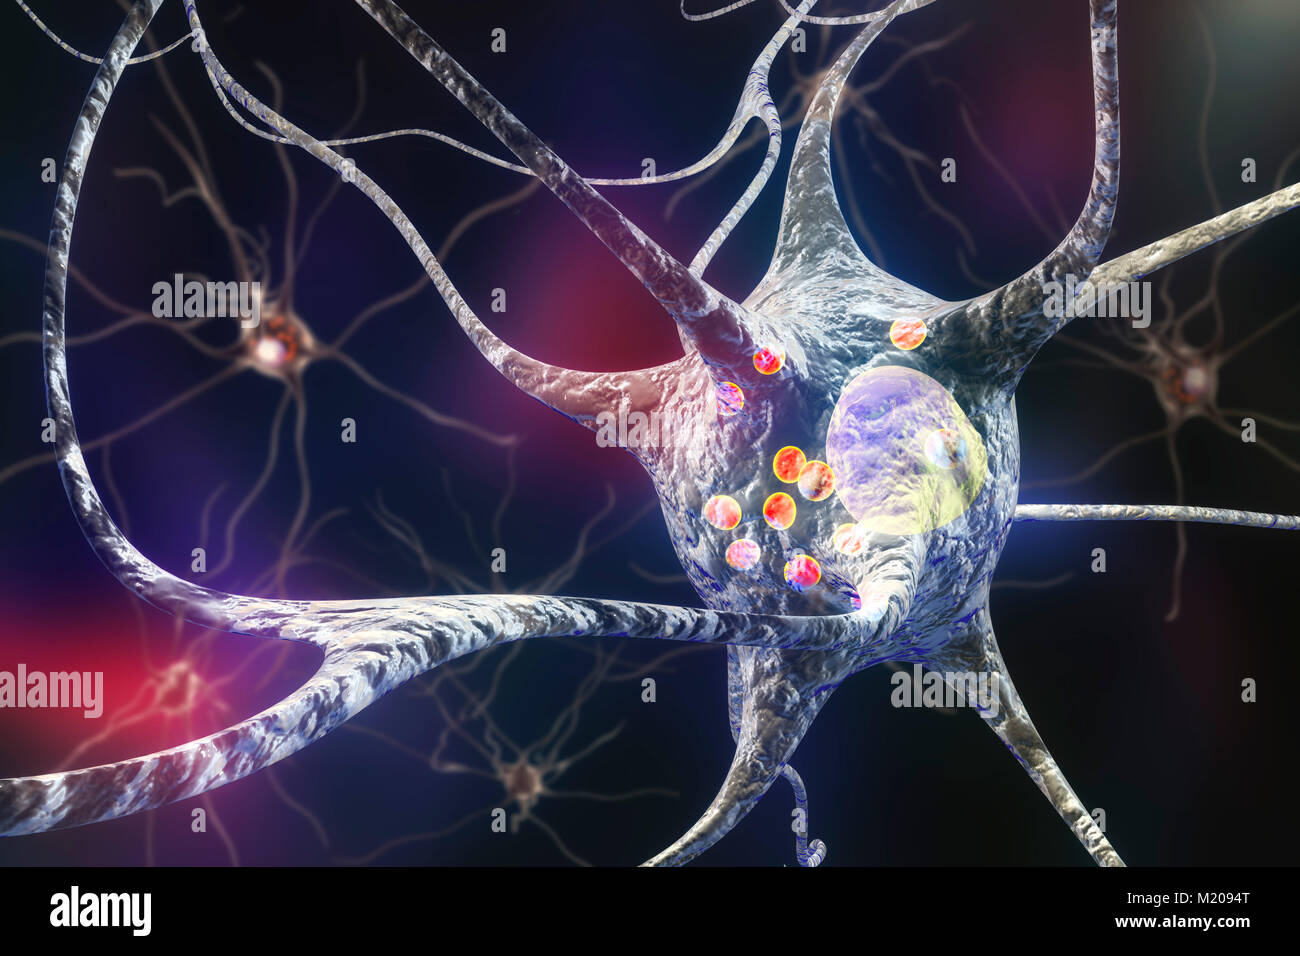 Parkinson Nervenzellen. Computer Abbildung von menschlichen Nervenzellen von Lewy Körpern (kleine rote Kugeln im Zytoplasma der Nervenzellen) im Gehirn eines Patienten mit der Parkinsonschen Krankheit betroffen. Lewy Körpern sind abnormale Ansammlungen von Protein, das in Nervenzellen bei der Parkinson-krankheit entwickeln, Lewy-Körperchen-Demenz und anderen neurologischen Erkrankungen. Stockfoto